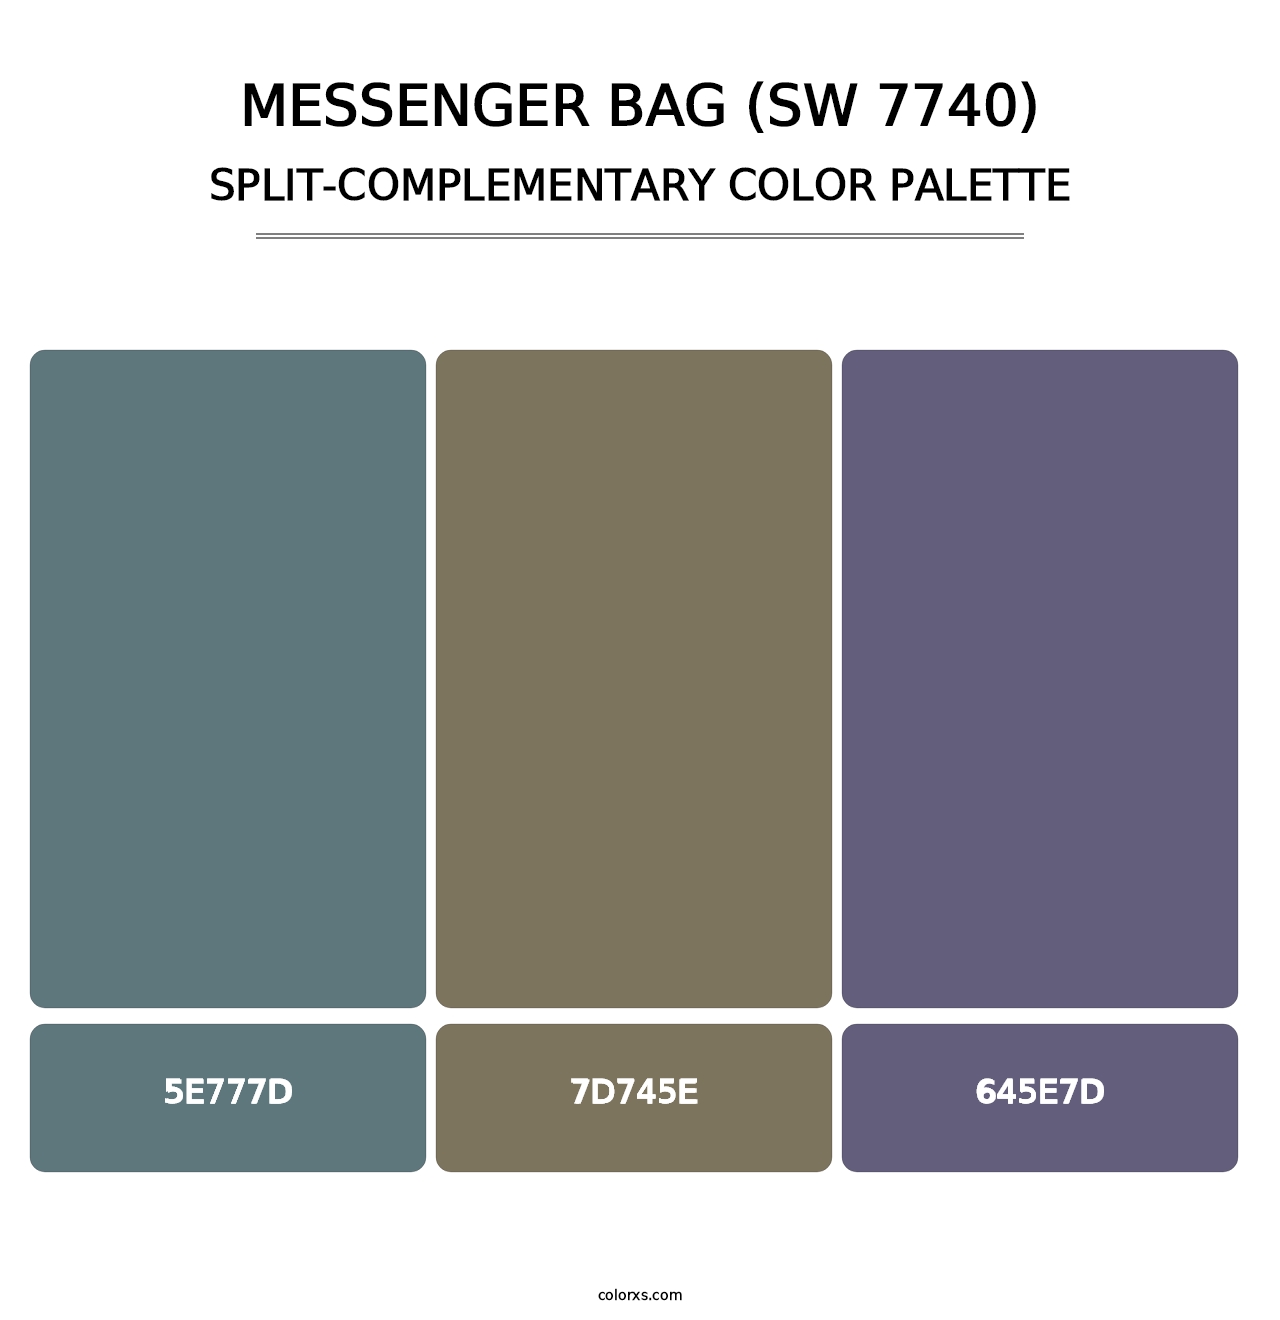 Messenger Bag (SW 7740) - Split-Complementary Color Palette